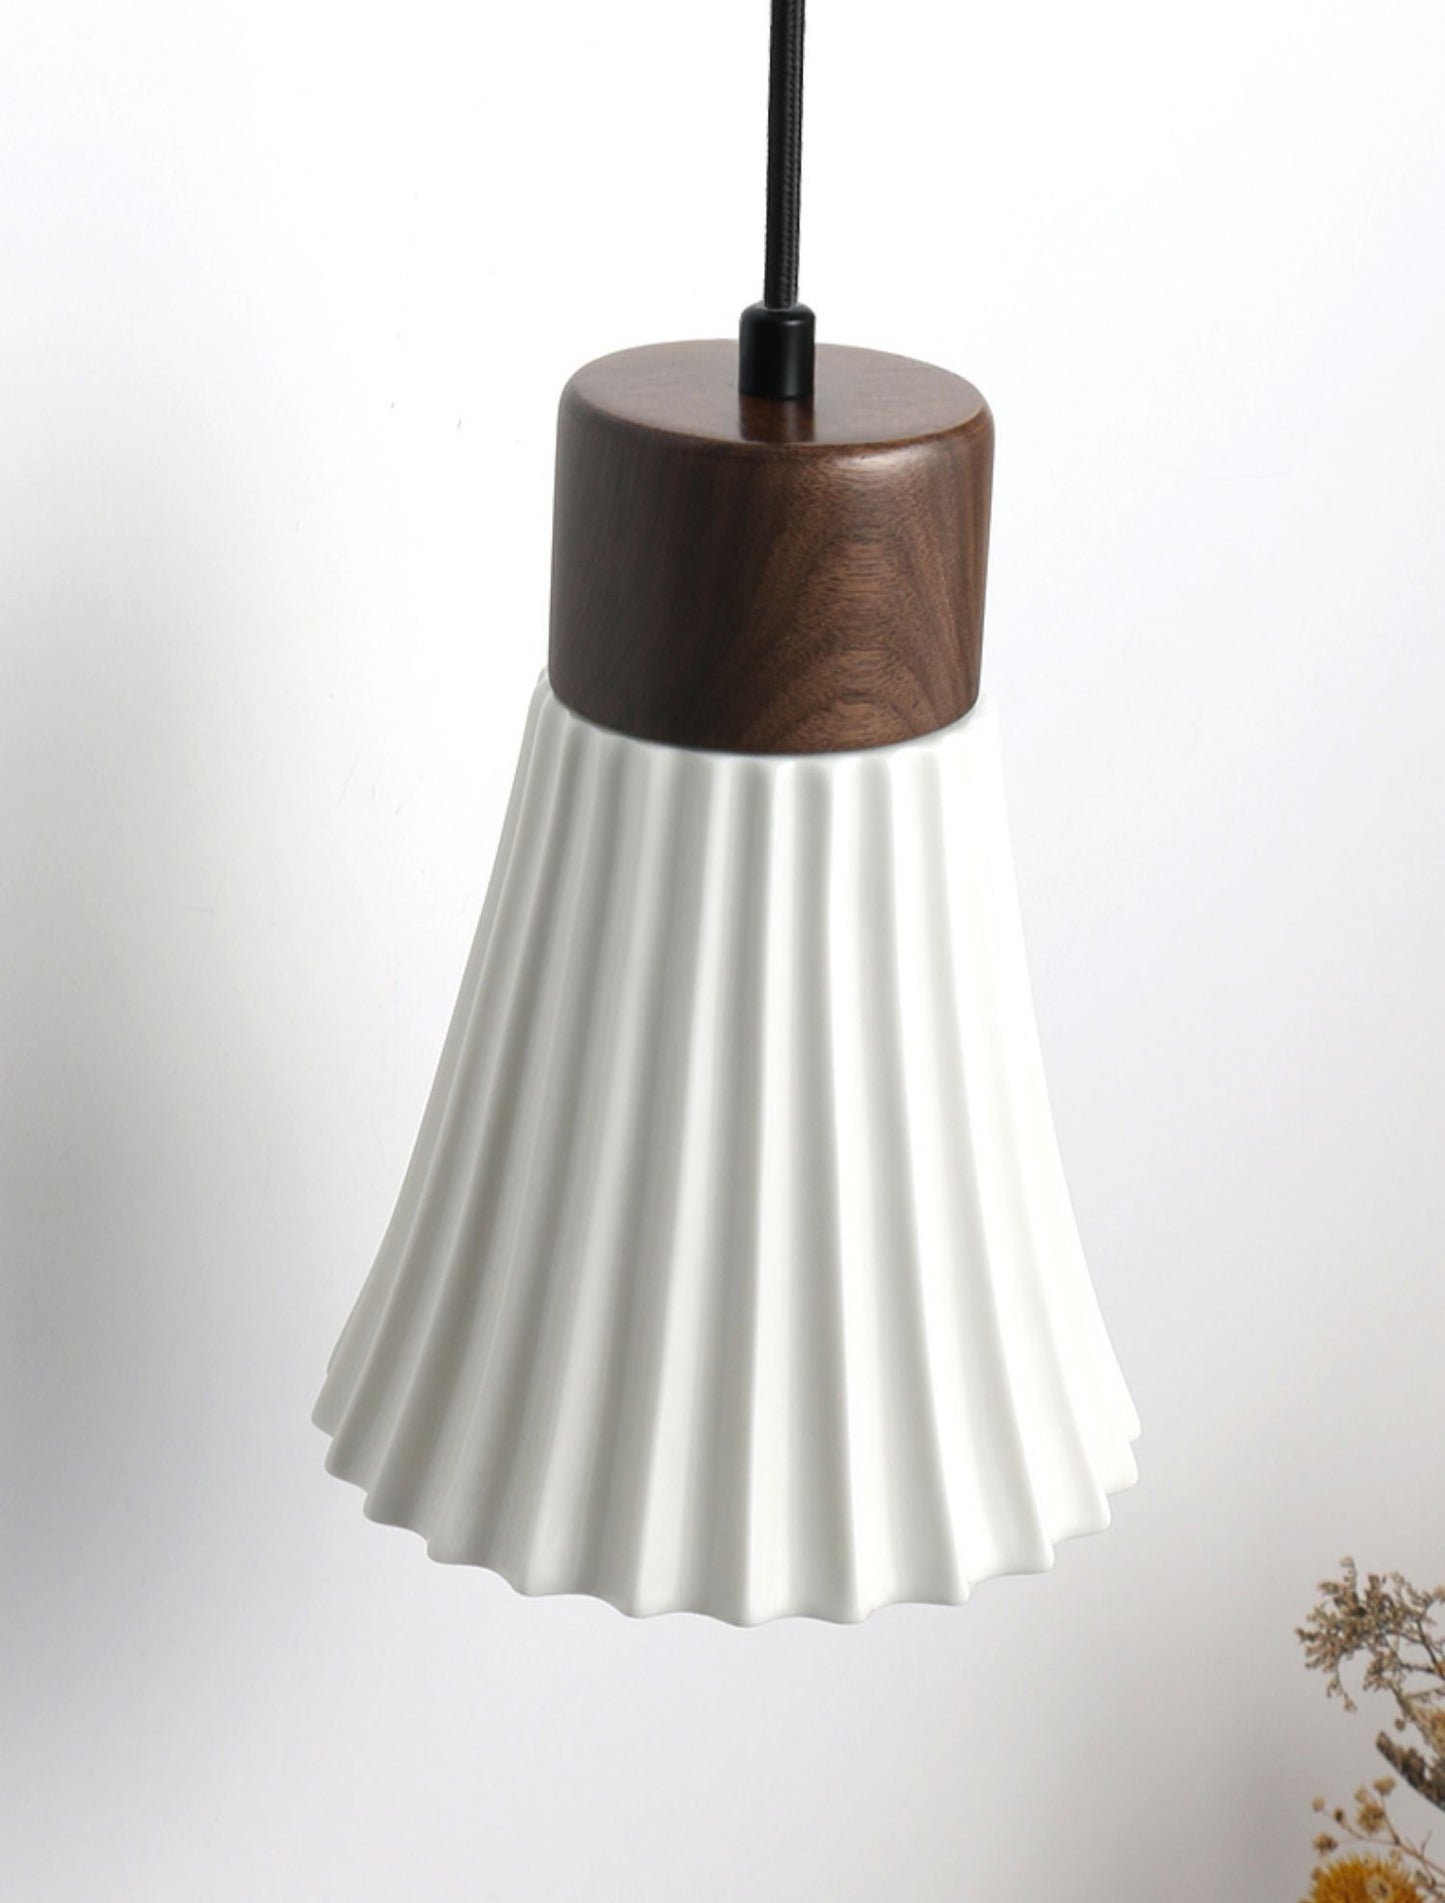 Wood Ceramic Pendant Light - 2093CPL